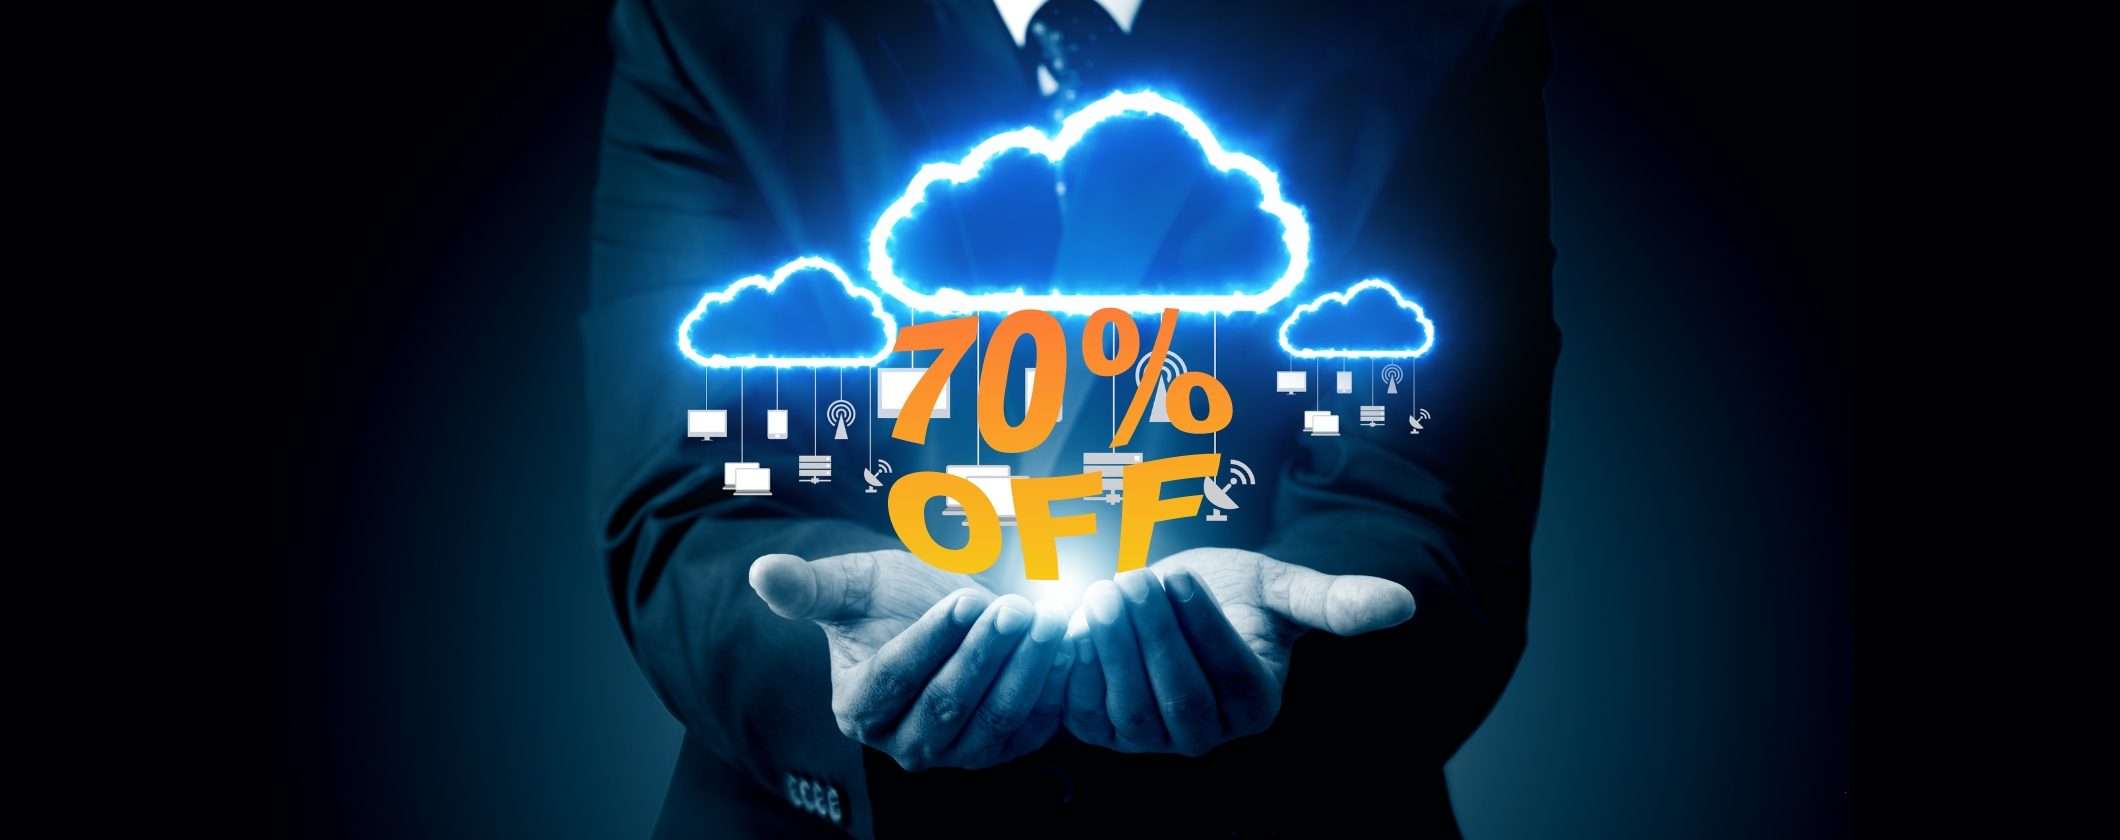 Risparmia il 70% con Internxt, il Cloud sicuro che protegge i tuoi file